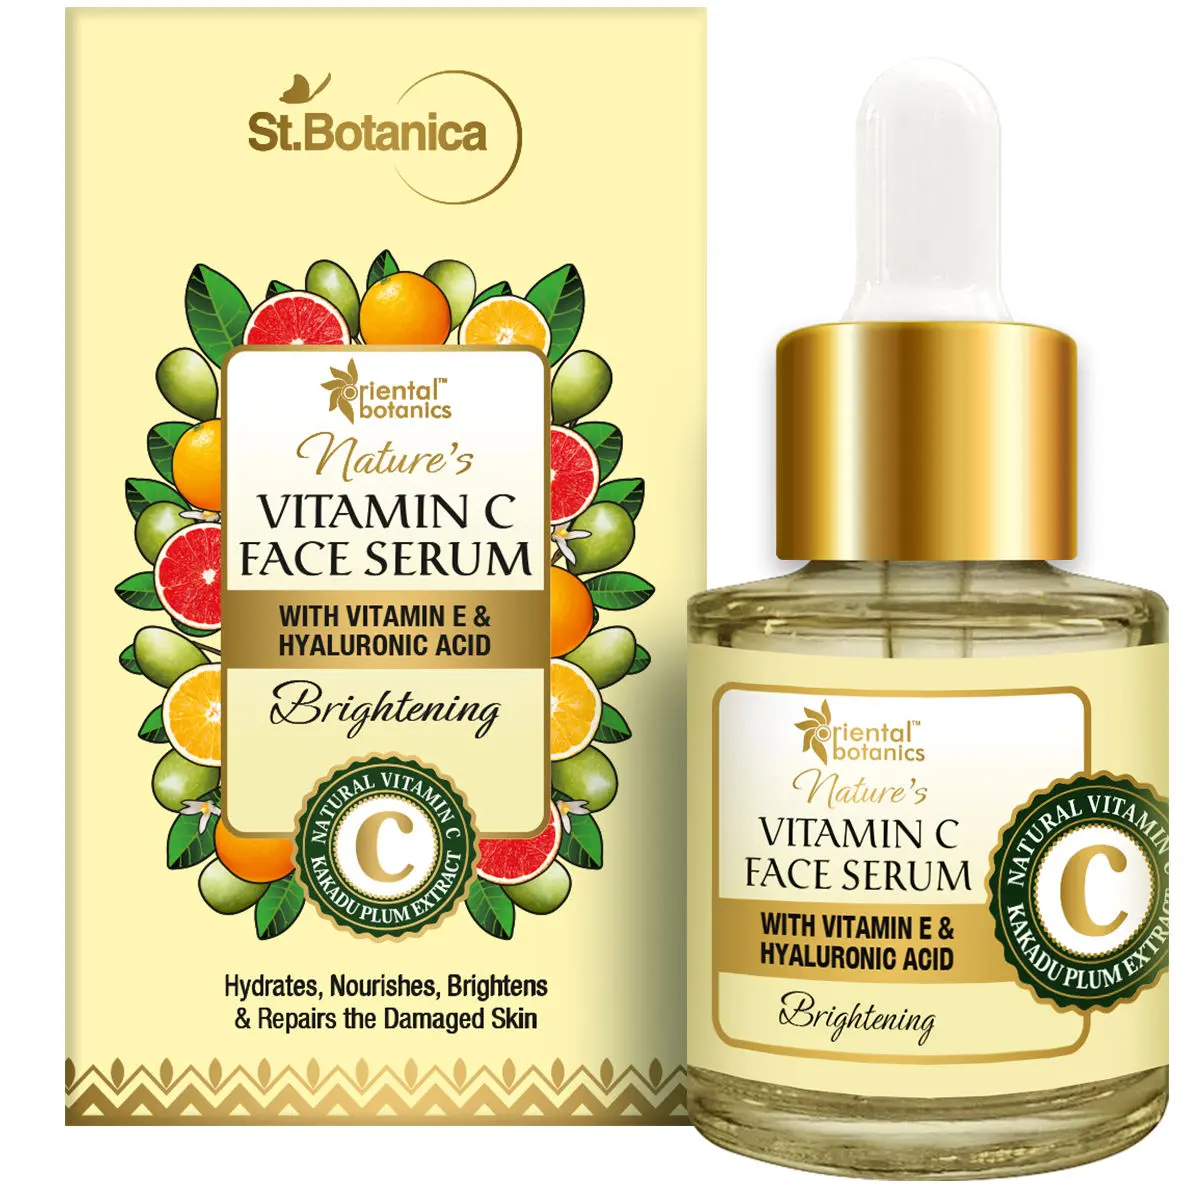 Oriental Botanics Nature's Vitamin C Brightening Face Serum With Vitamin E And Hyaluronic Acid - With Kakadu Plum (20 ml)